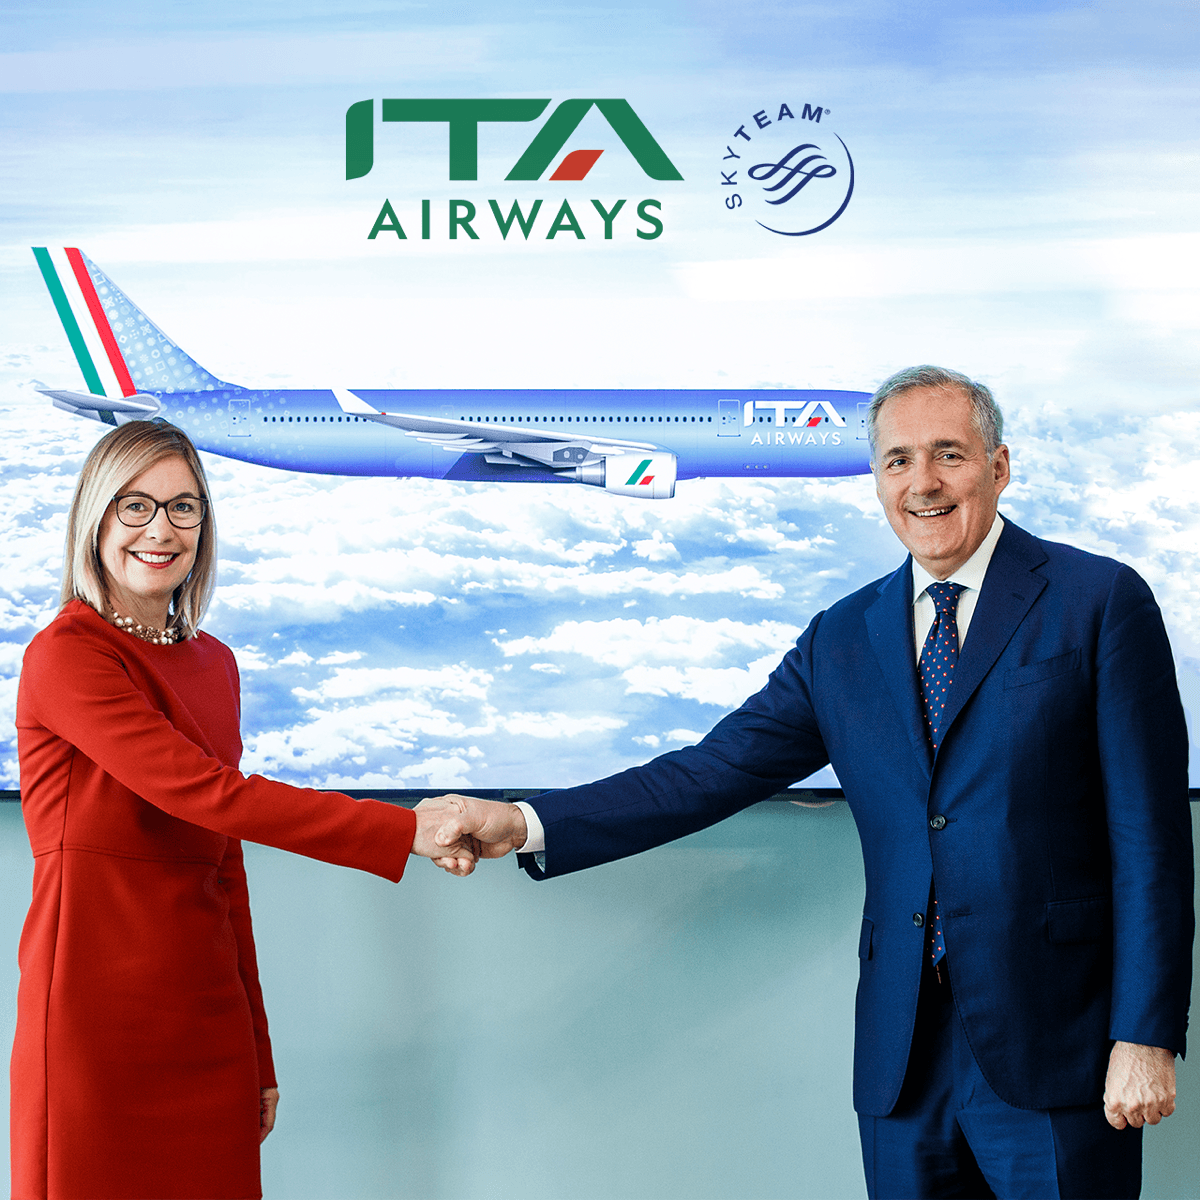 SWOT Analysis of ITA Airways - ITA Airways got welcomed by SkyTeam Airline Alliance